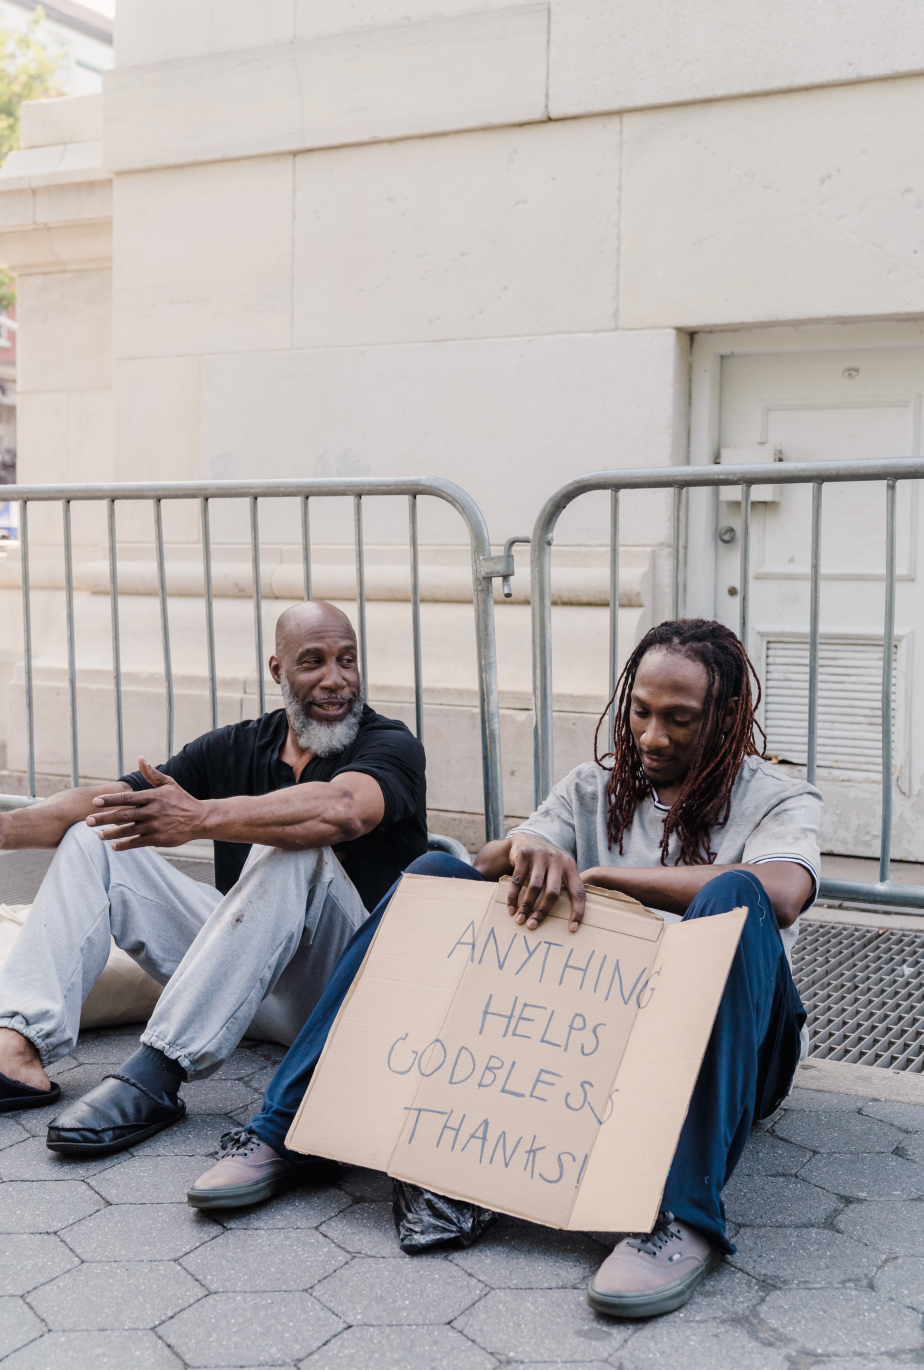 homeless asking for help